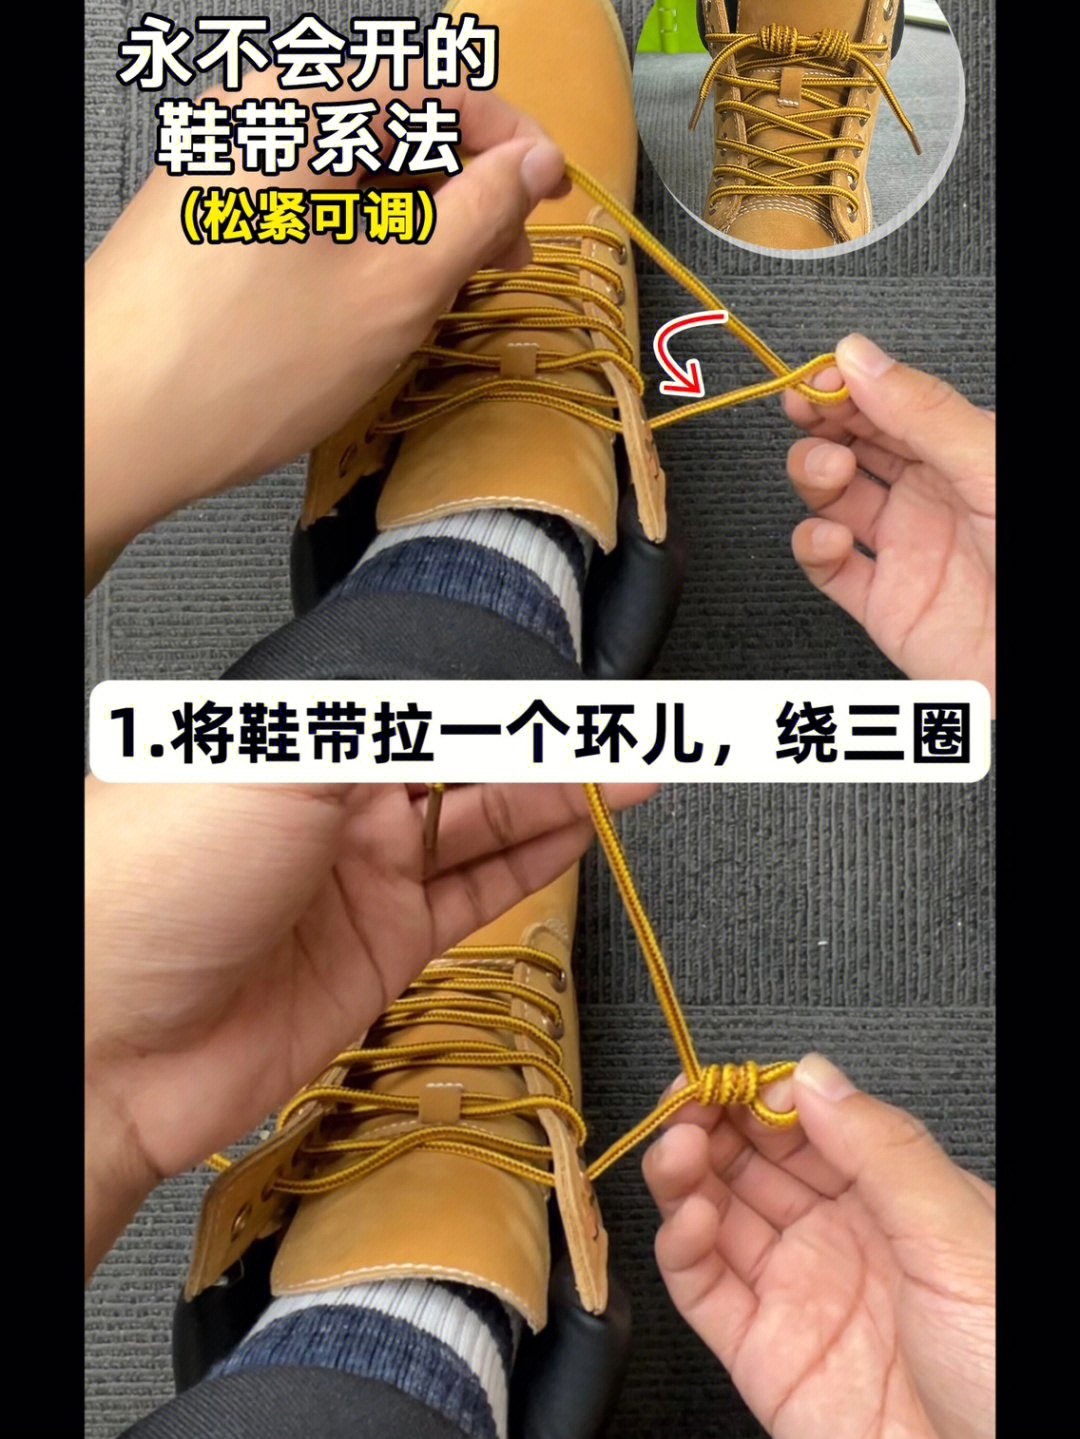 伸缩鞋带的系法图解图片